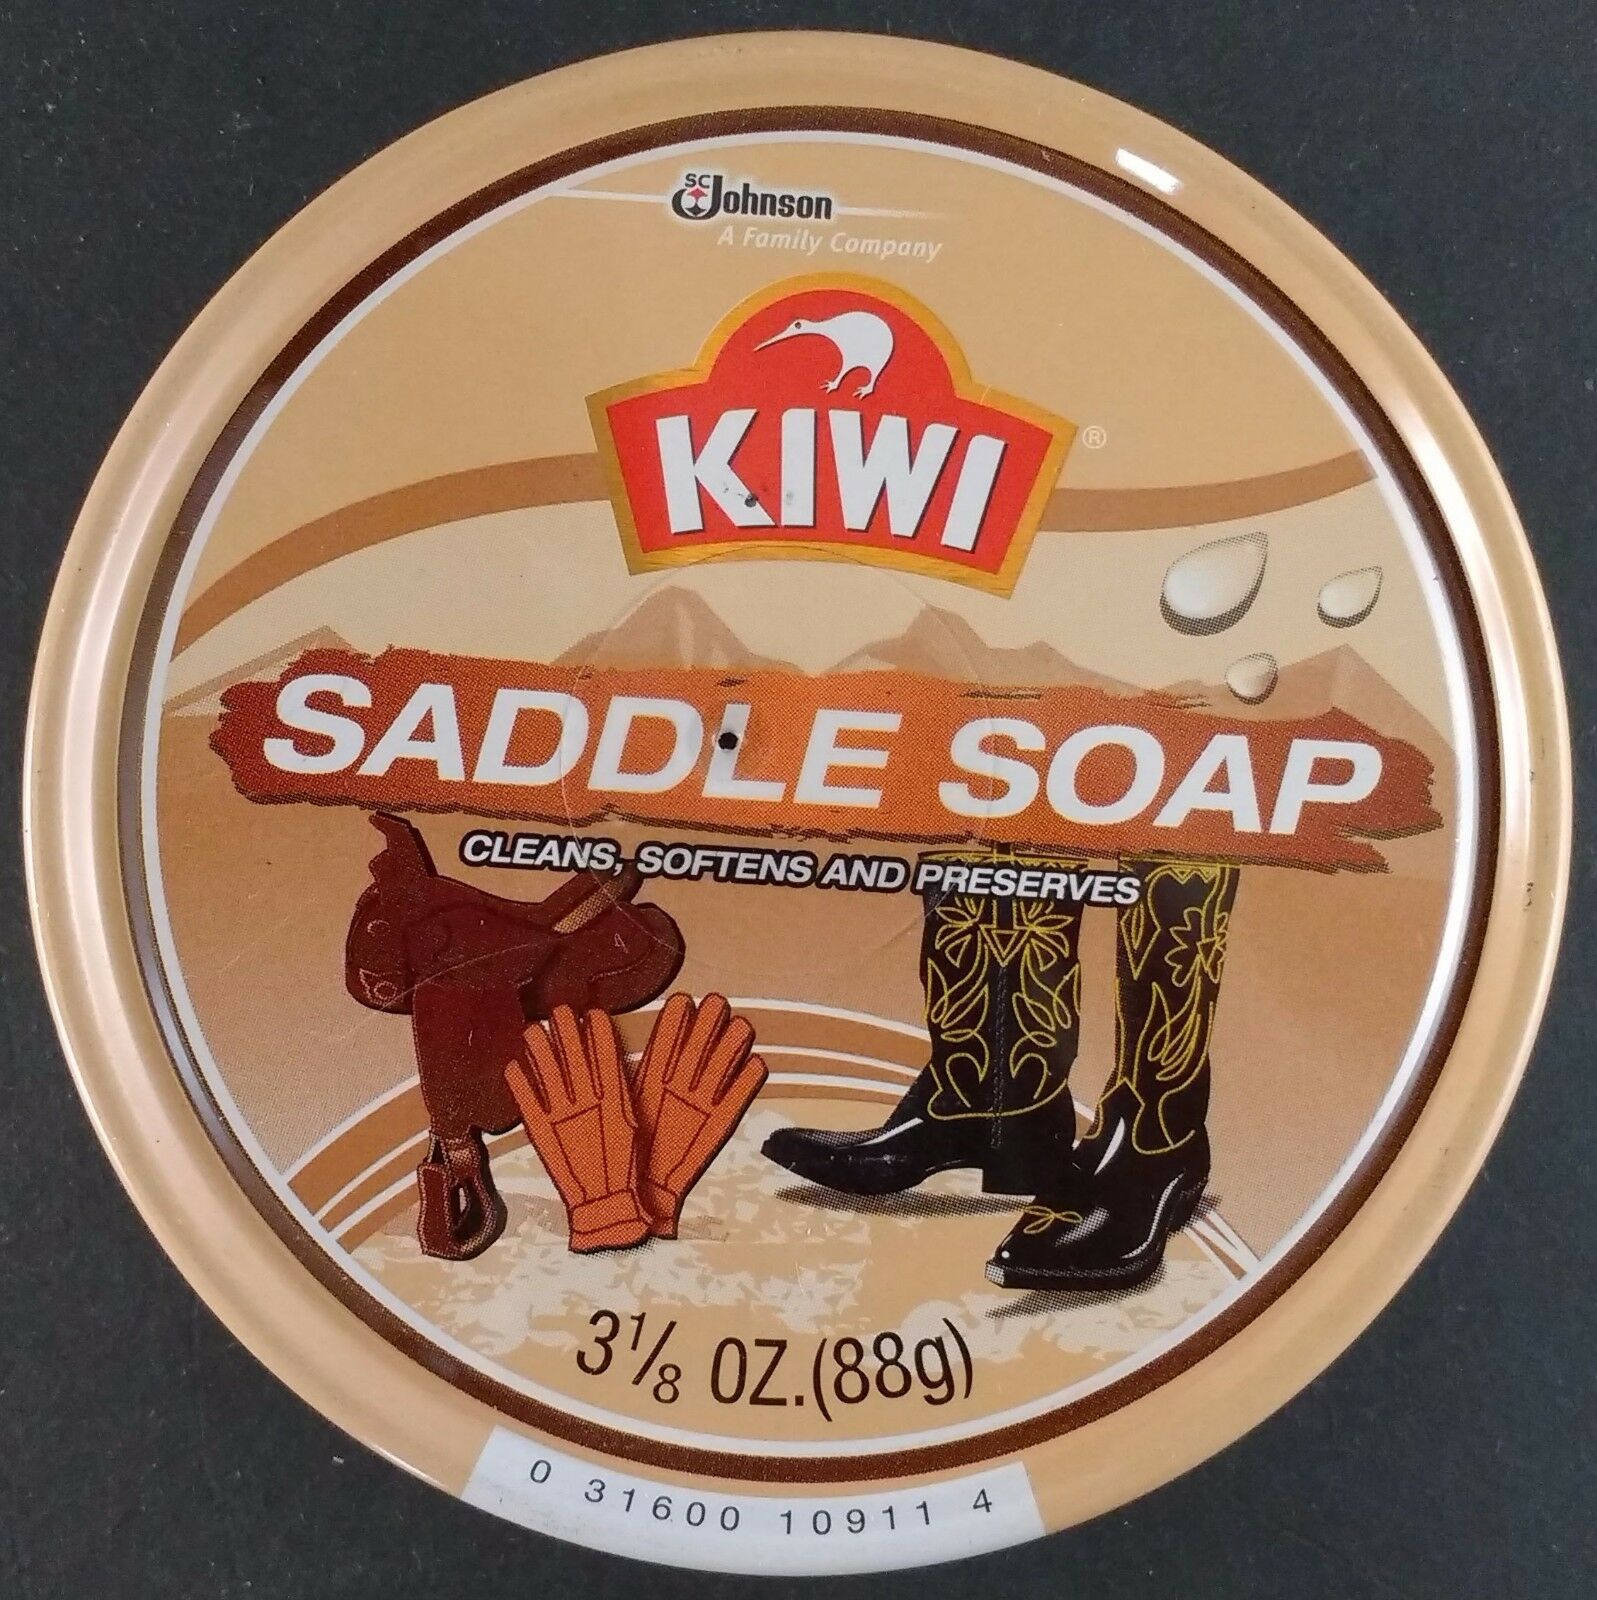 Kiwi Saddle Soap & Leather Care Jumbo 3 1/8 Oz (88g) Cans